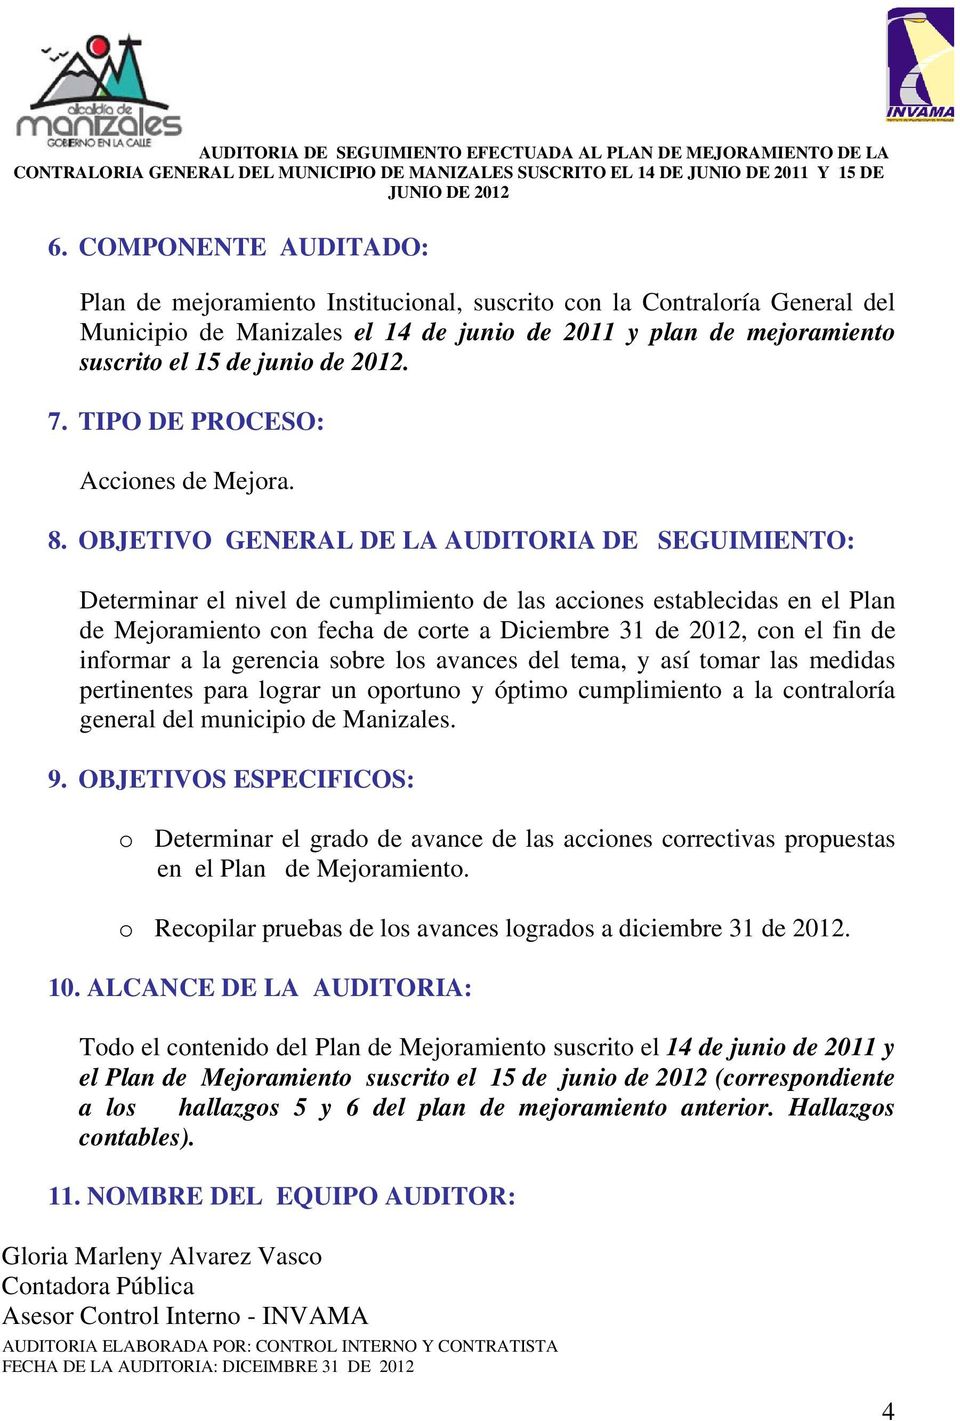 OBJETIVO GENERAL DE LA AUDITORIA DE SEGUIMIENTO: Determinar el nivel de cumplimiento de las acciones establecidas en el Plan de Mejoramiento con fecha de corte a Diciembre 31 de 2012, con el fin de